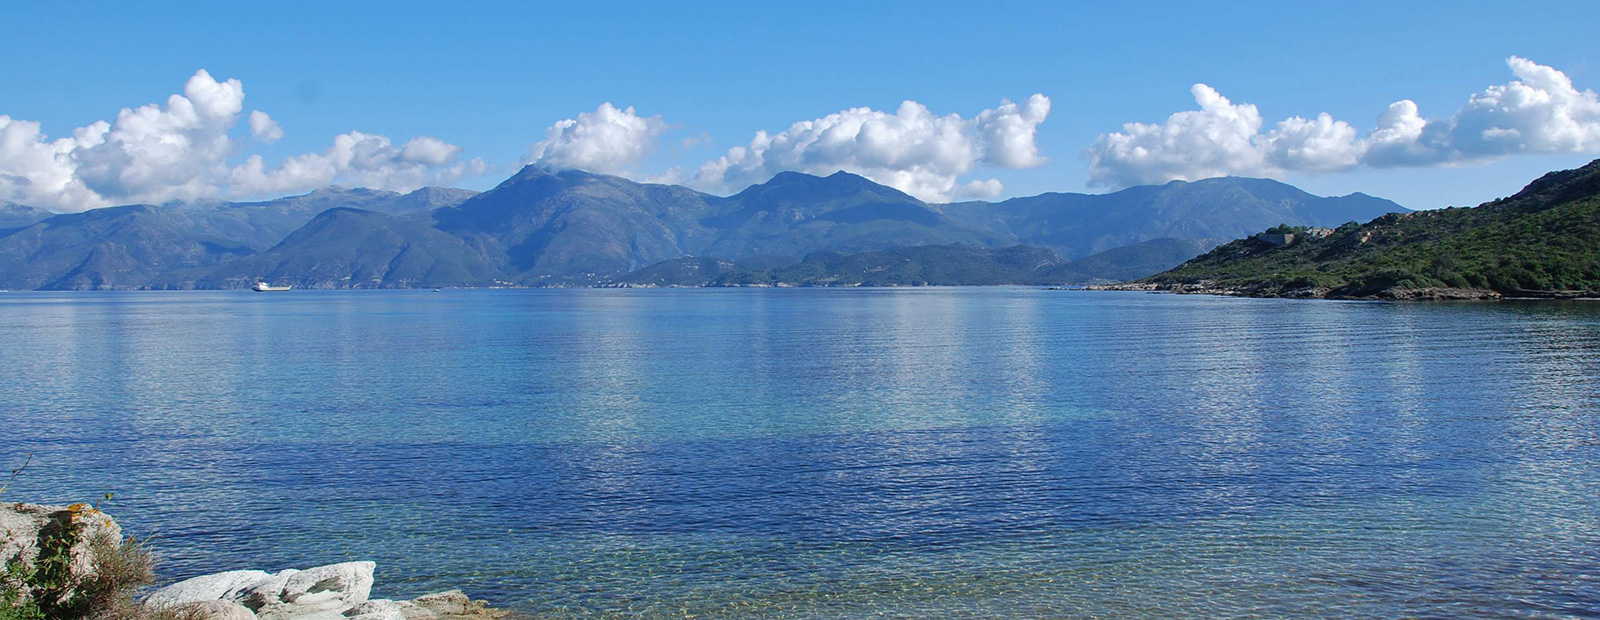 Luxuriöse Ferienhäuser auf Korsika